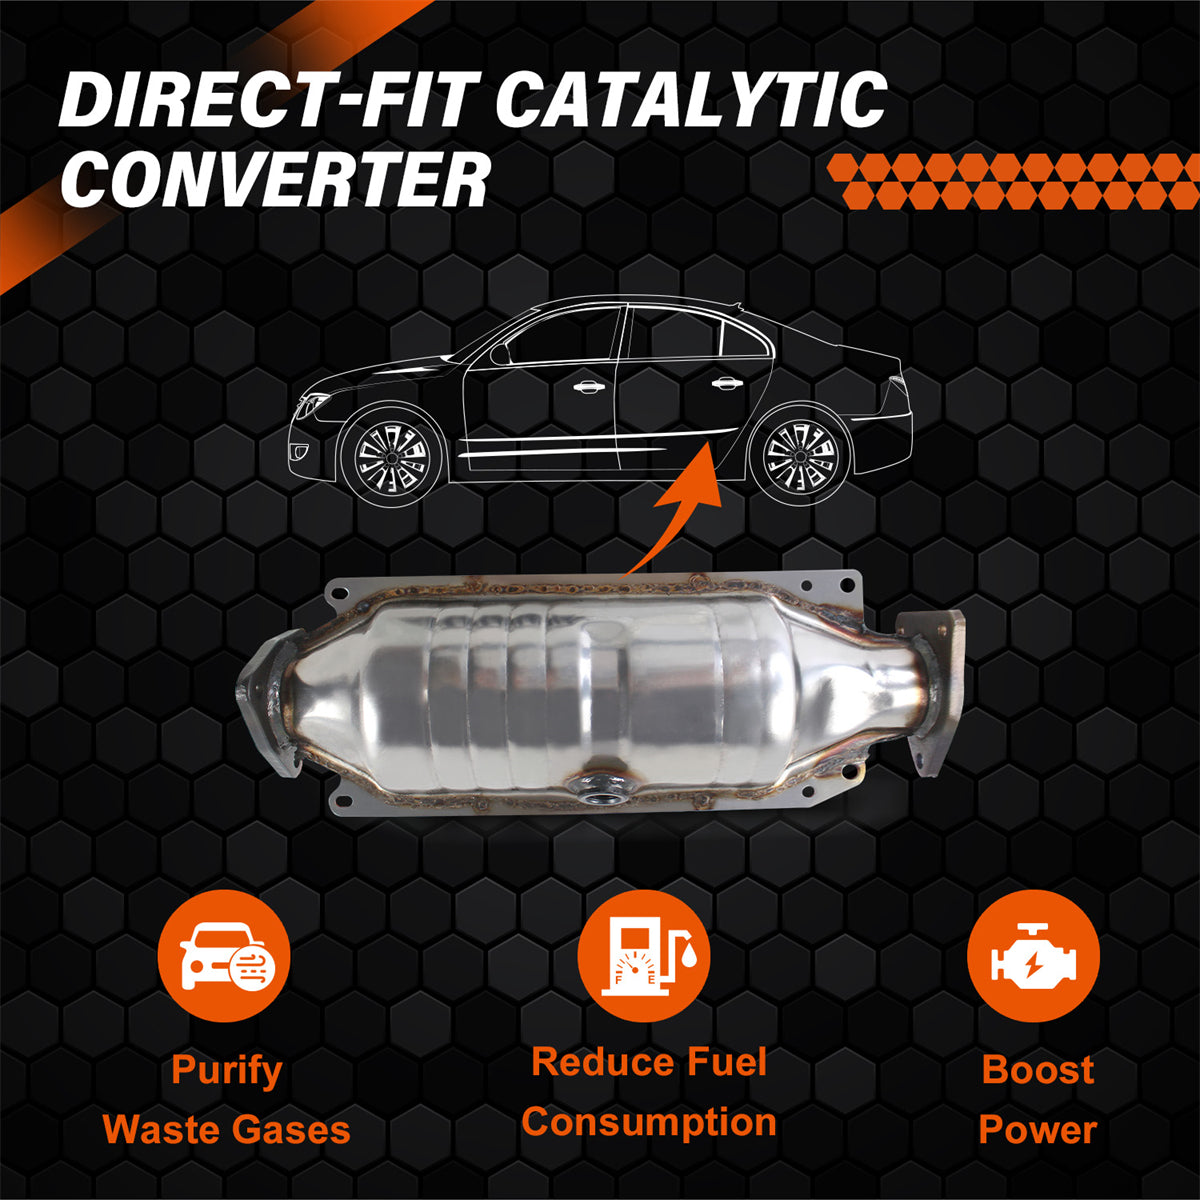 Catalytic Converter 40234, Catalytic Converter for 1998-2002 Honda Accord, Daysyore Catalytic Converter, Car Catalytic Converter